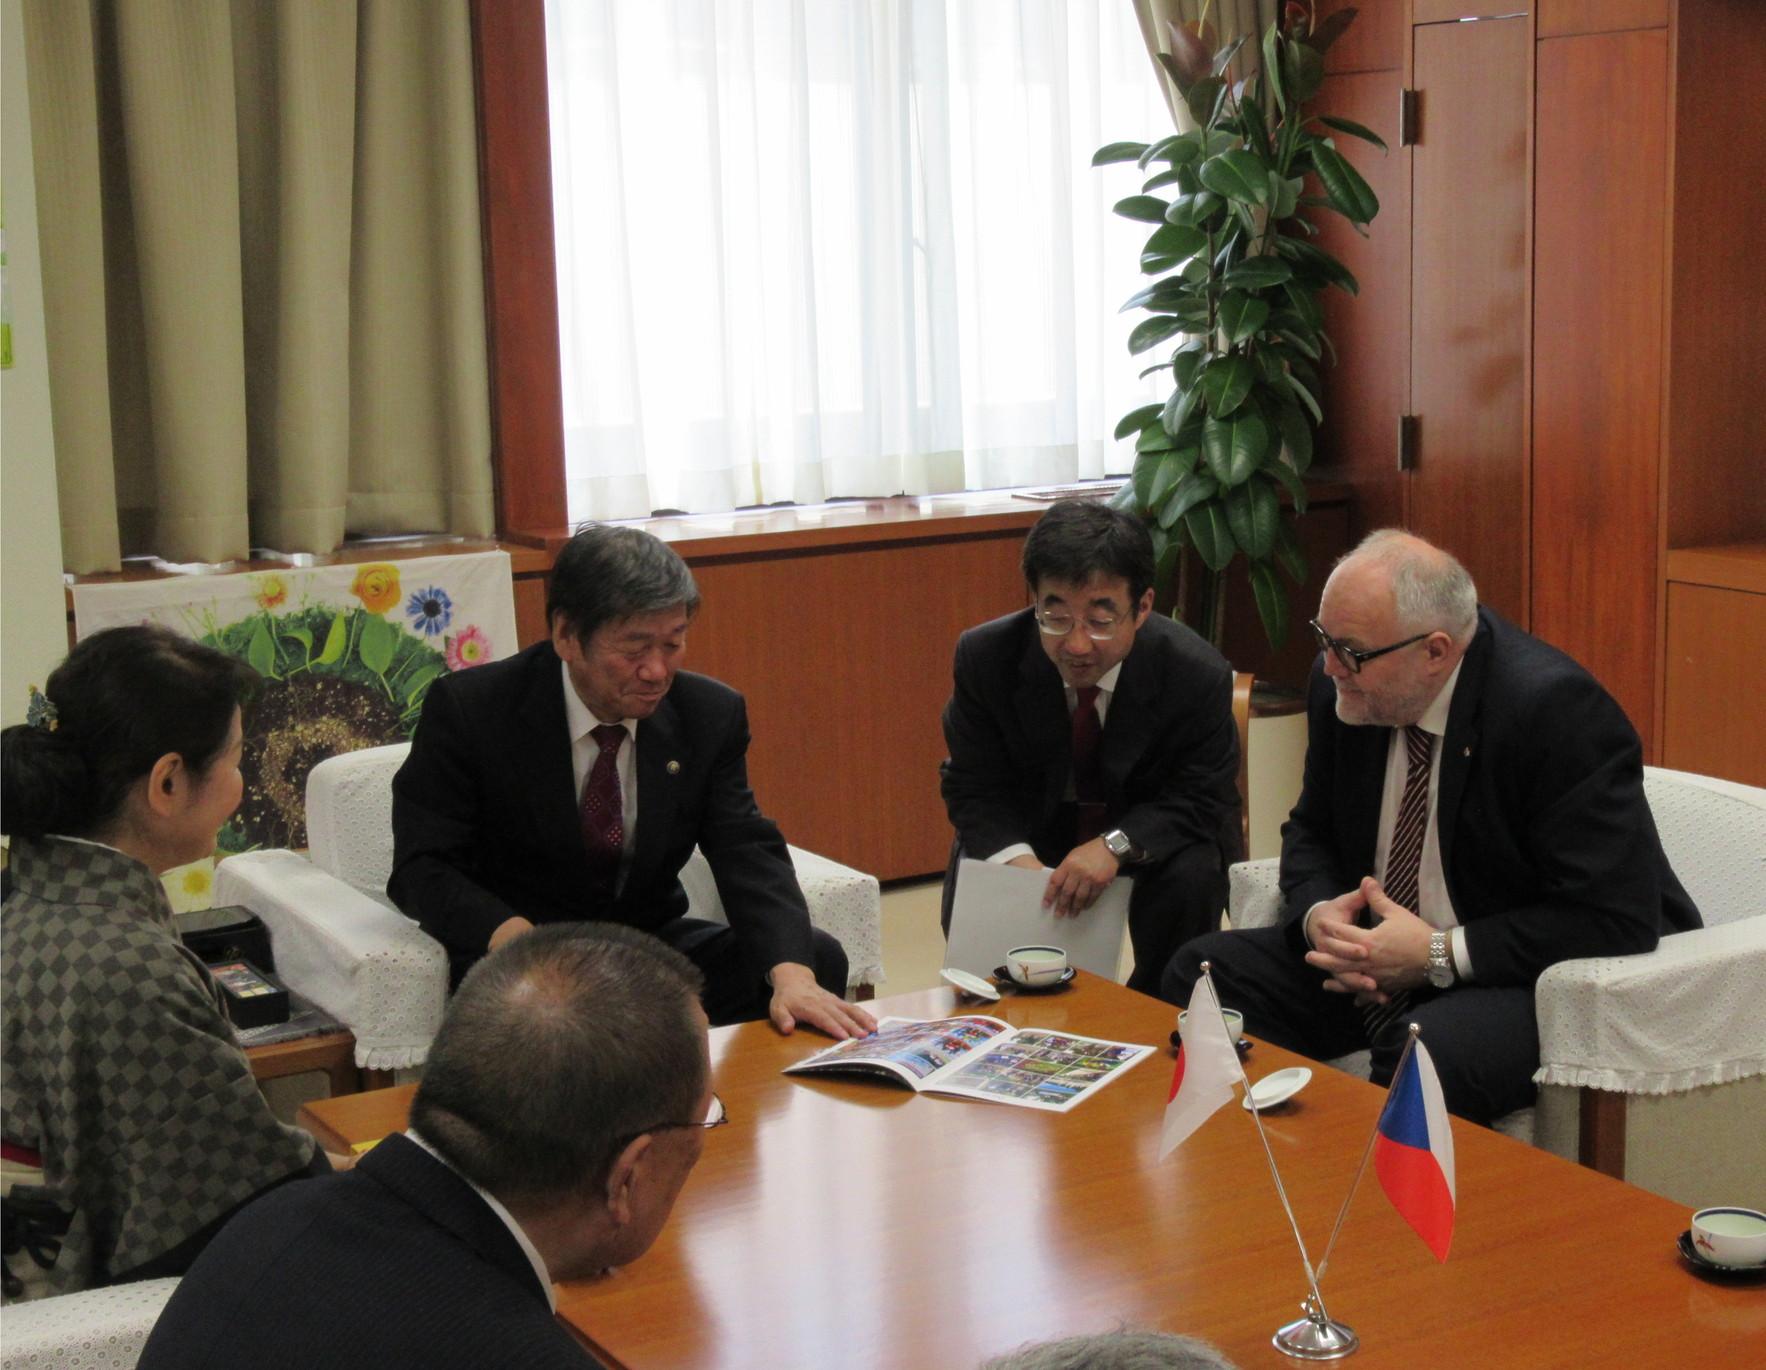 駐日チェコ共和国大使館臨時代理大使一行と小林市長が白いソファーに座って、テーブルの上のパンフレットを見て話している写真